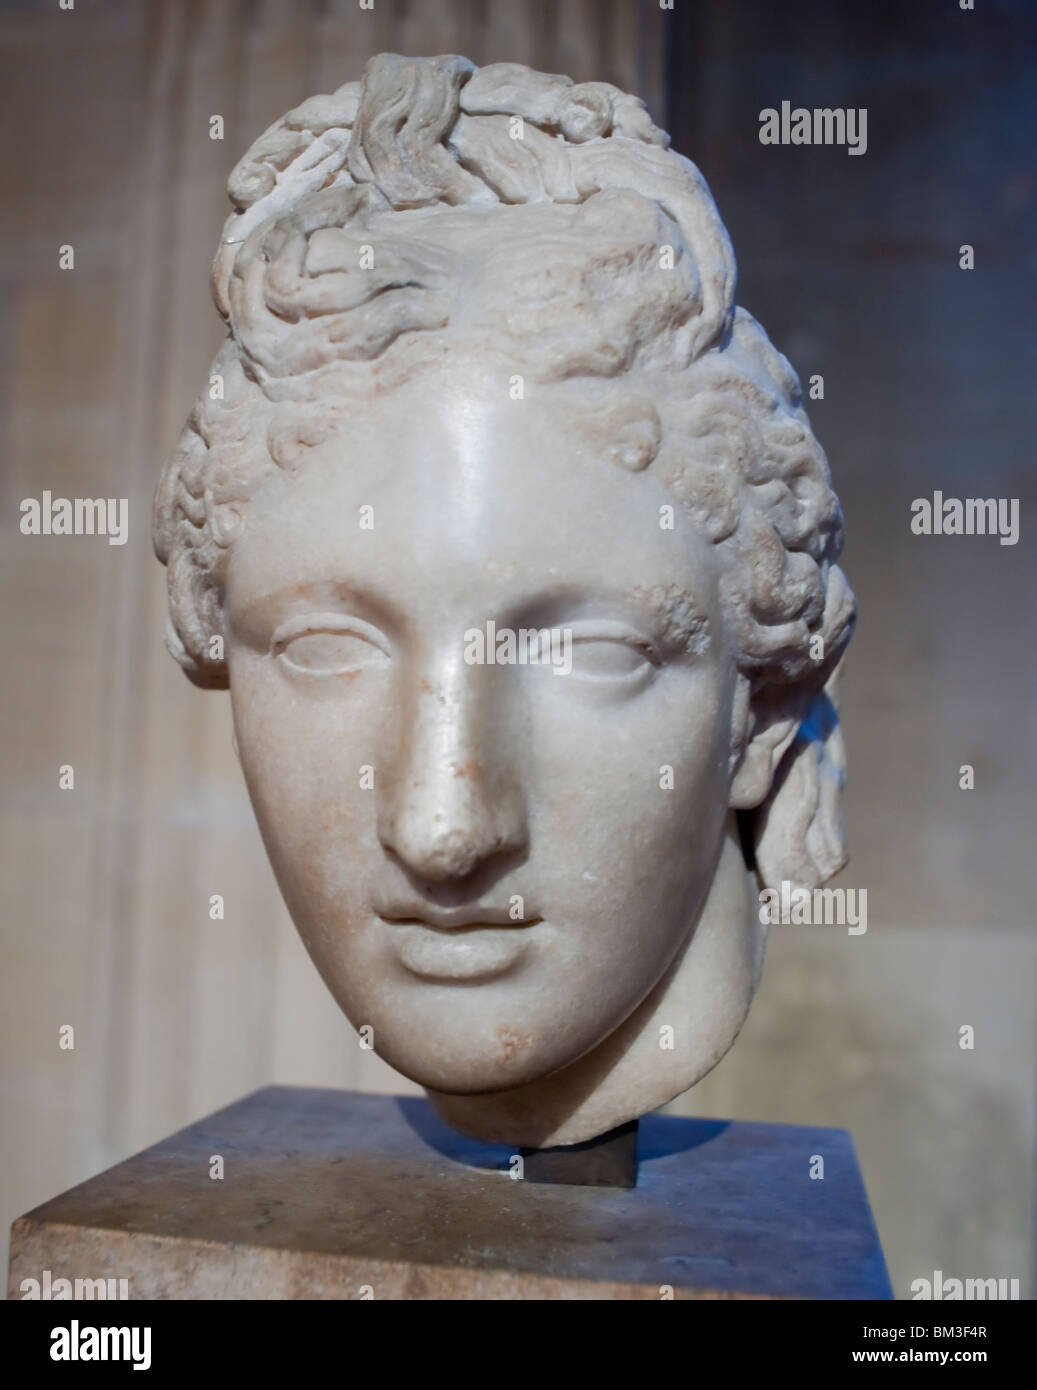 Gros plan, visage, façade, sculptures en marbre, Statue d'une déesse grecque, Musée du Louvre, Paris, France, art de la civilisation antique Banque D'Images